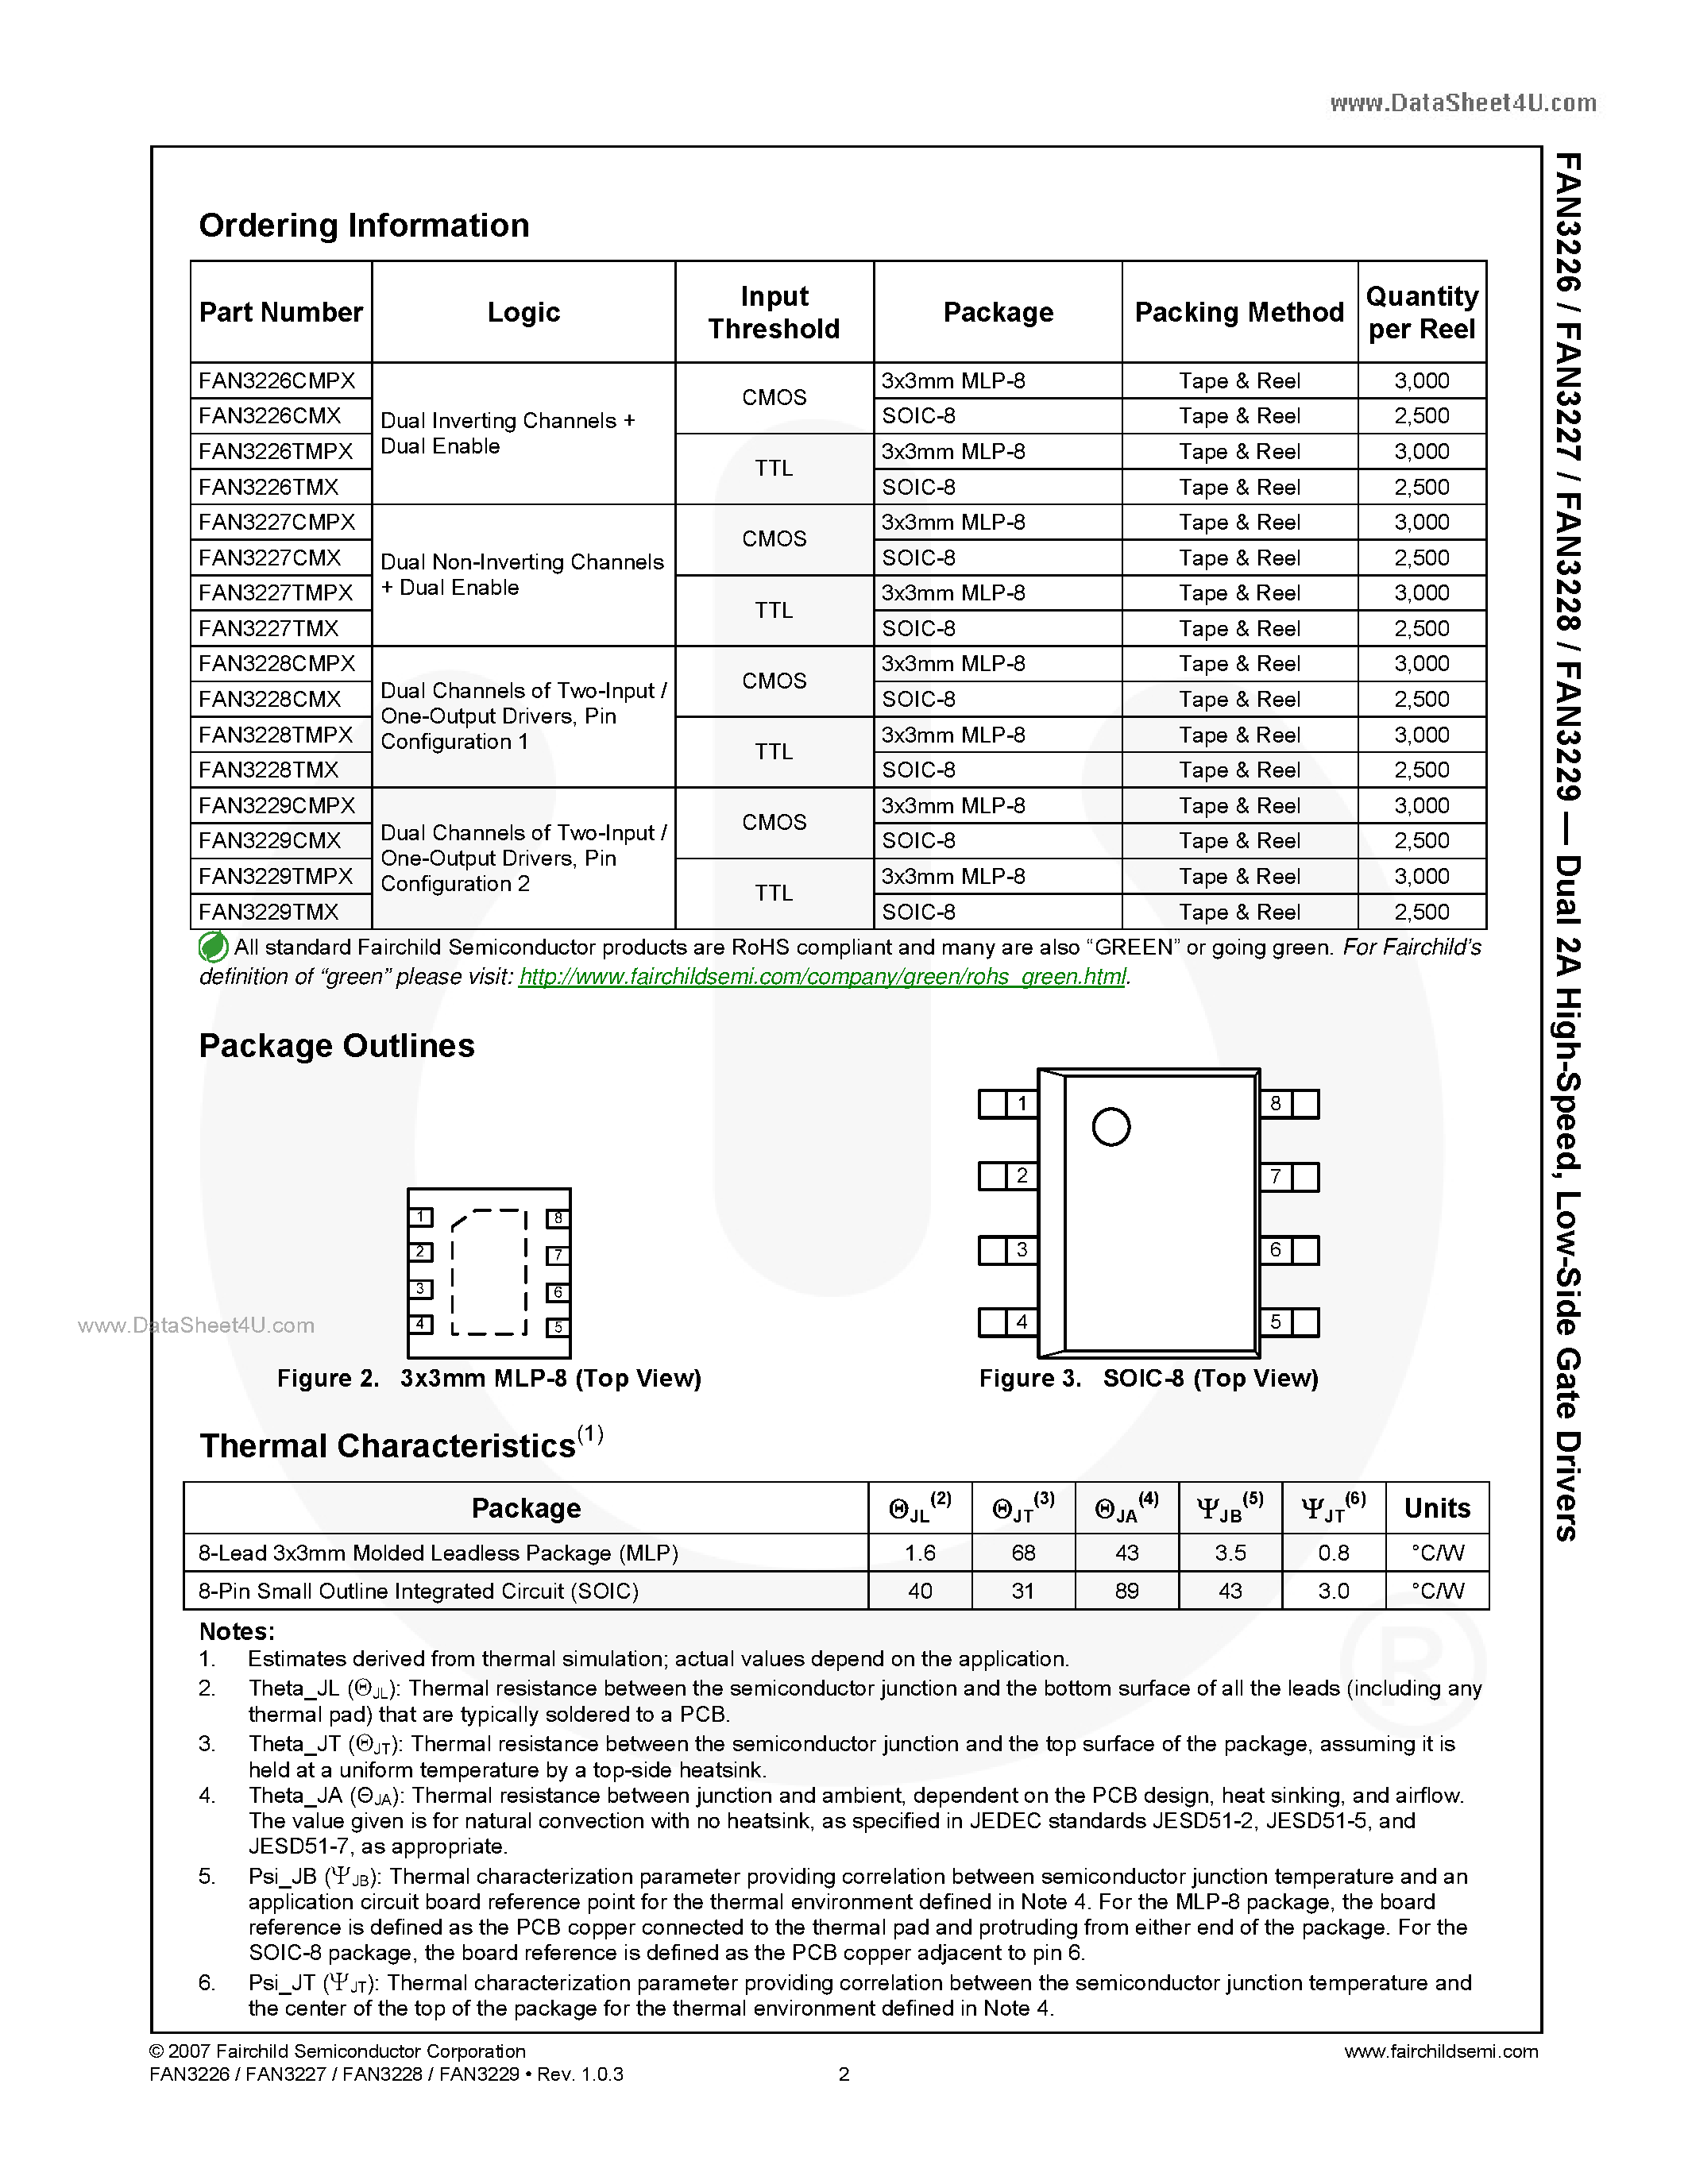 Datasheet FAN3226 - (FAN3226 - FAN3229) Low-Side Gate Drivers page 2